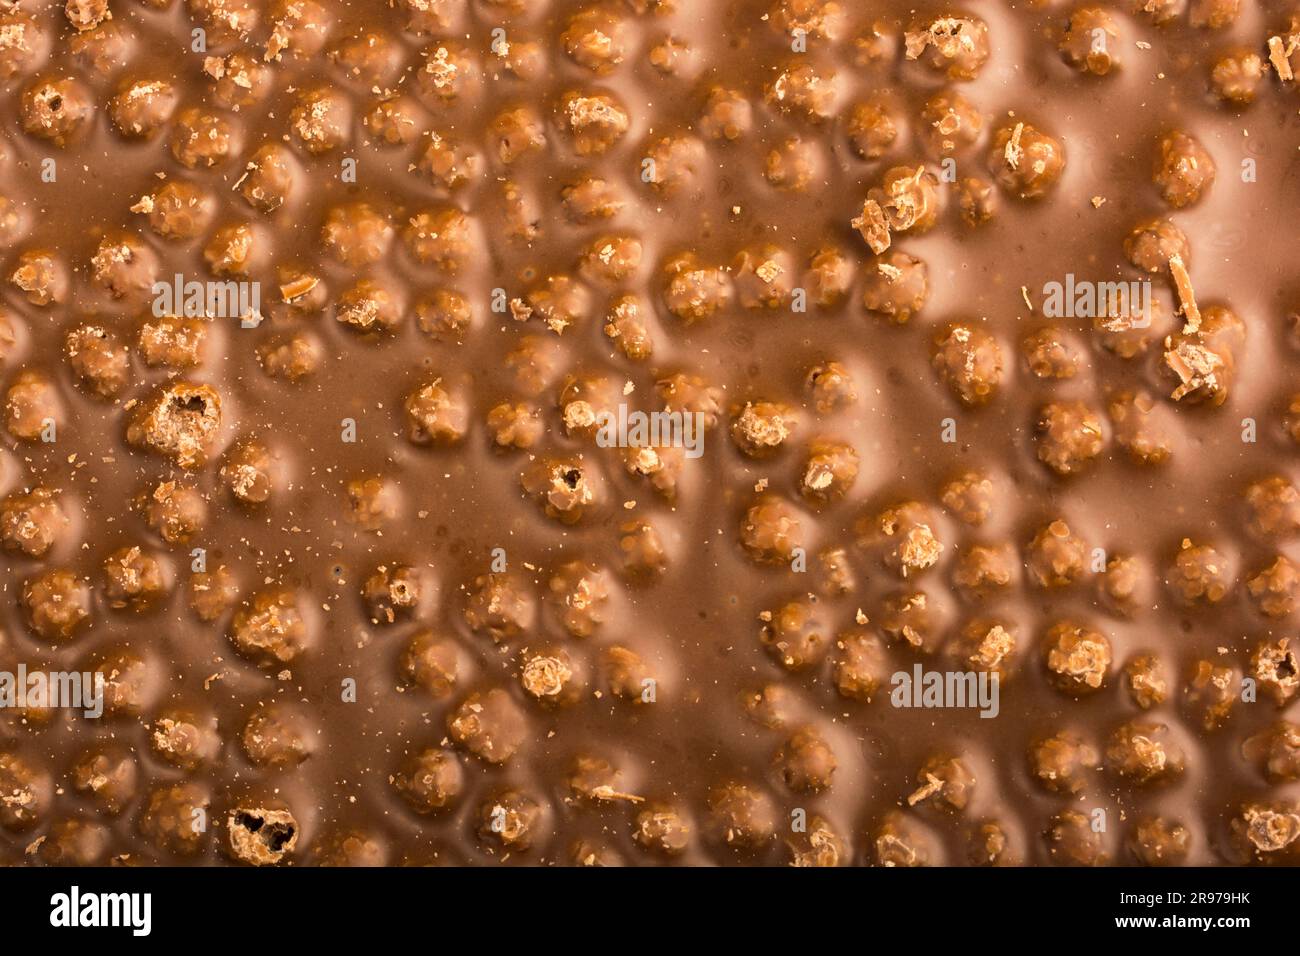 sfondo di cioccolato con nocciole per l'intera immagine Foto Stock